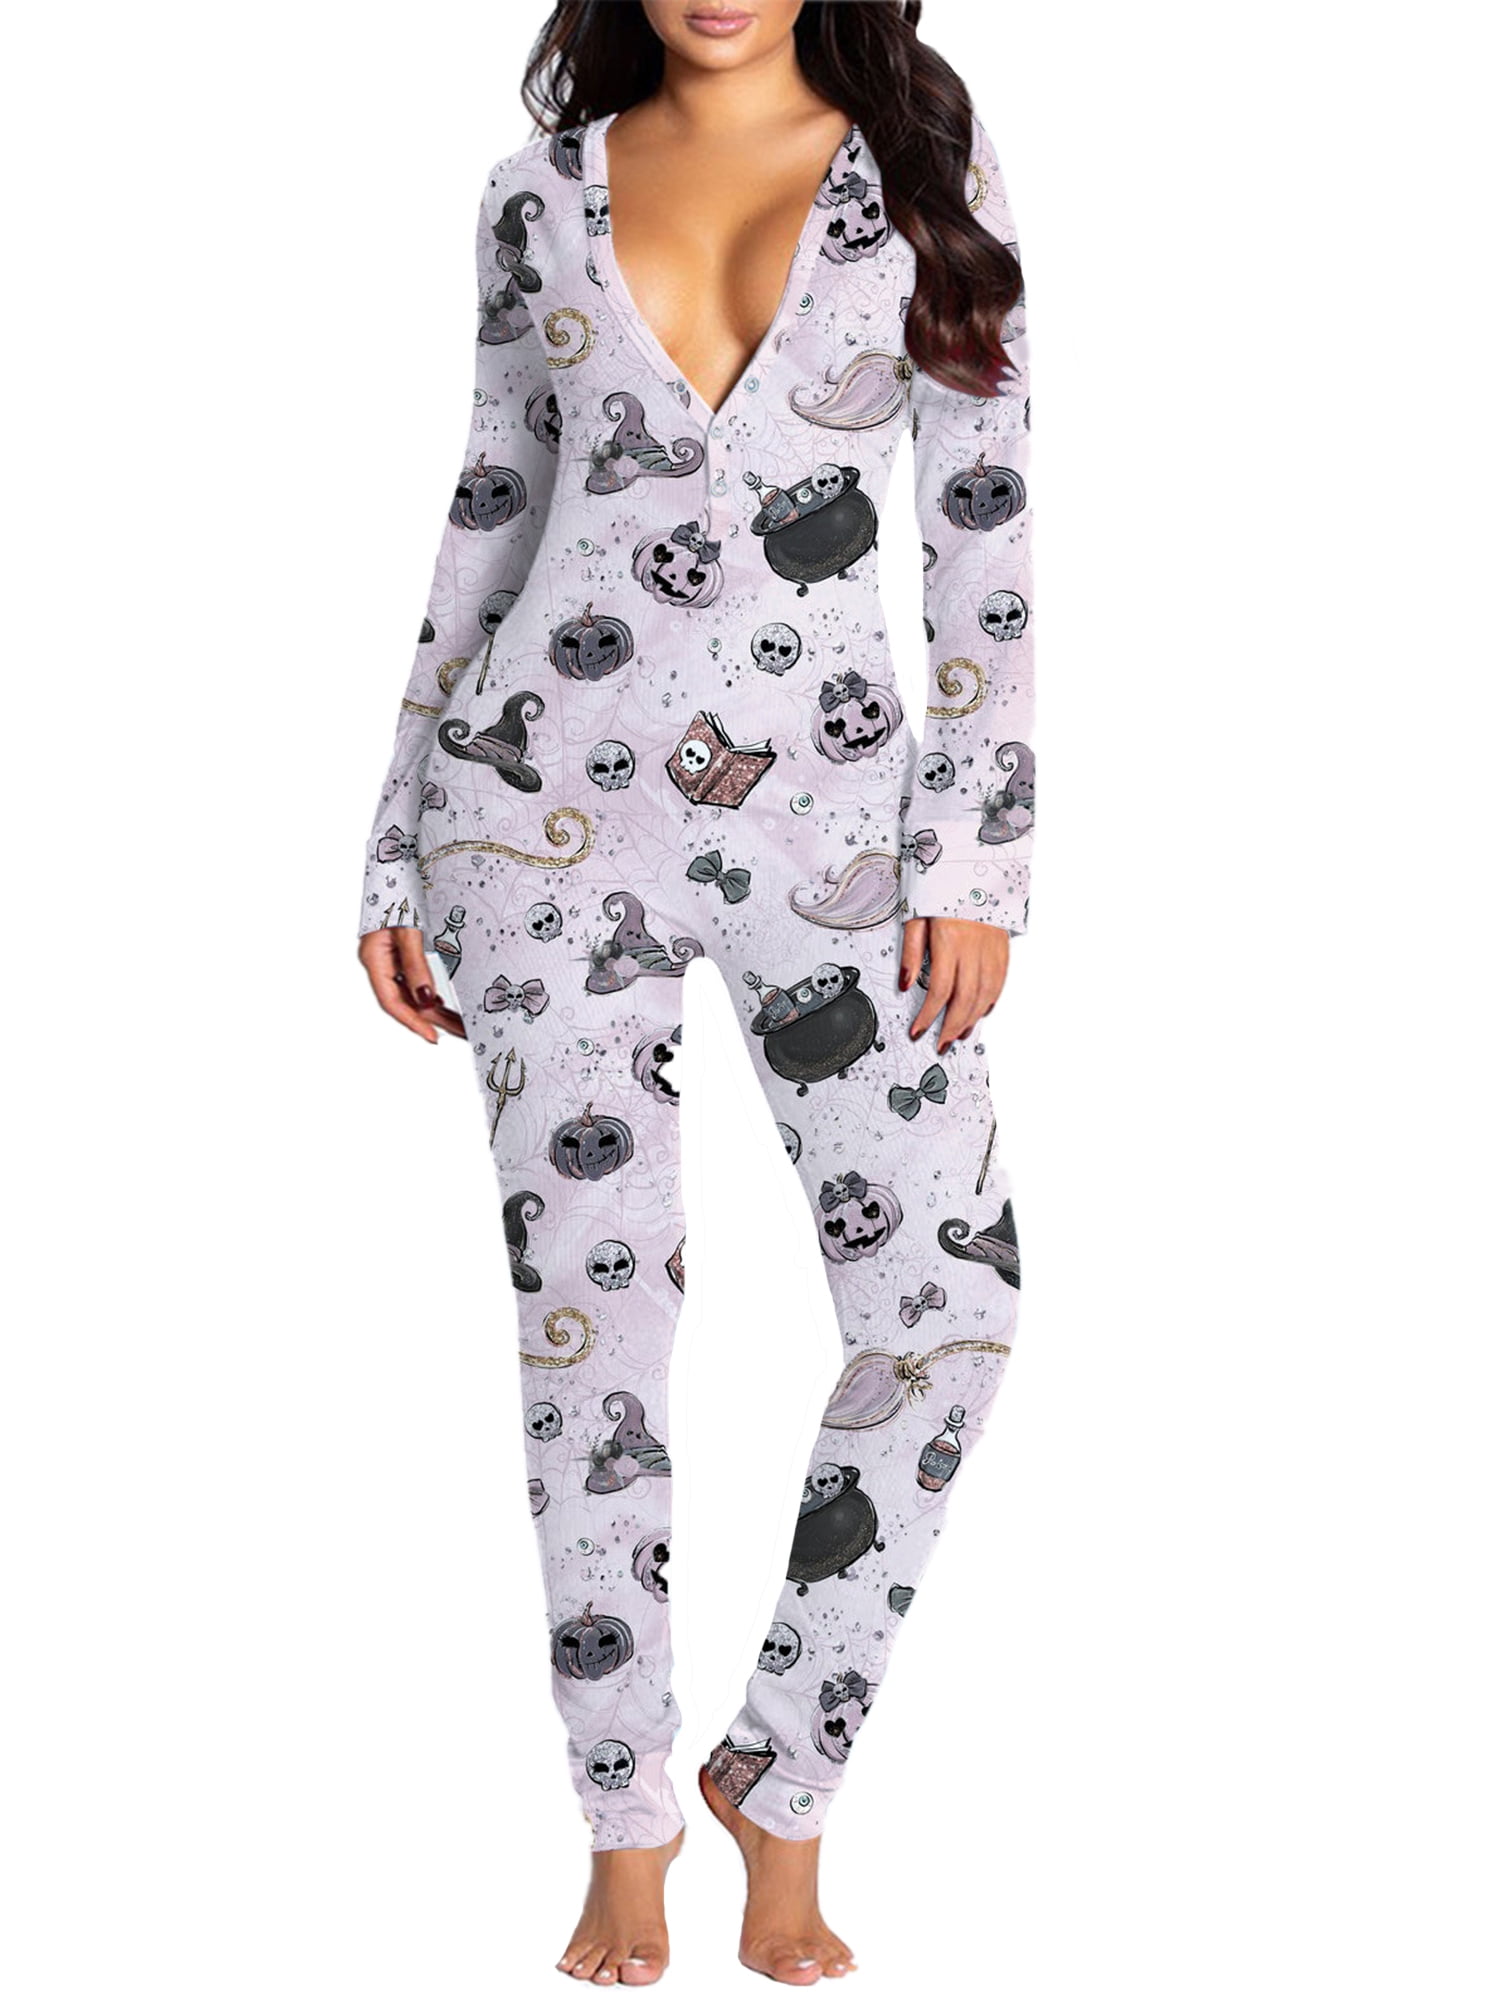 Nihewoo Halloween Onesies for Women Functional Pajamas with Butt Flap Adults Jumpsuit Long Sleeve Sleepwear Romper 